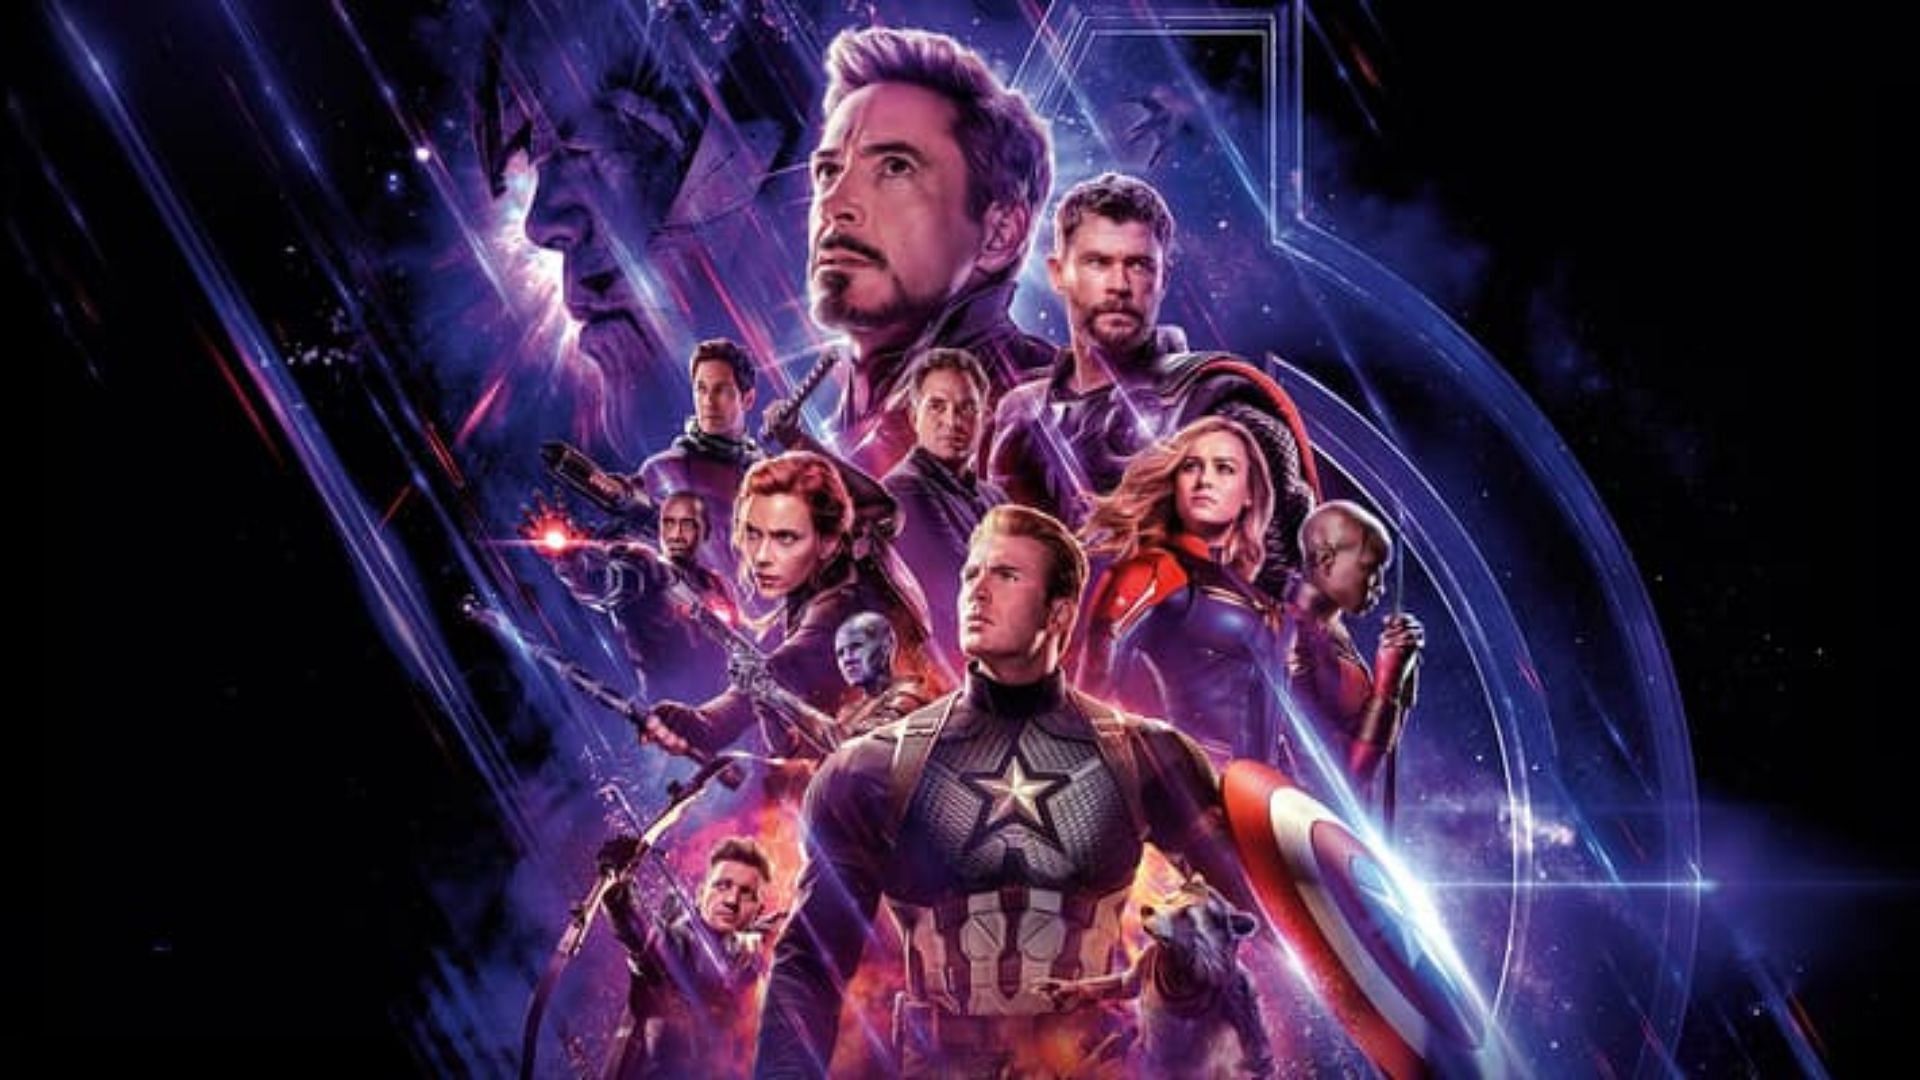 Avengers Endgame (Image via Marvel)